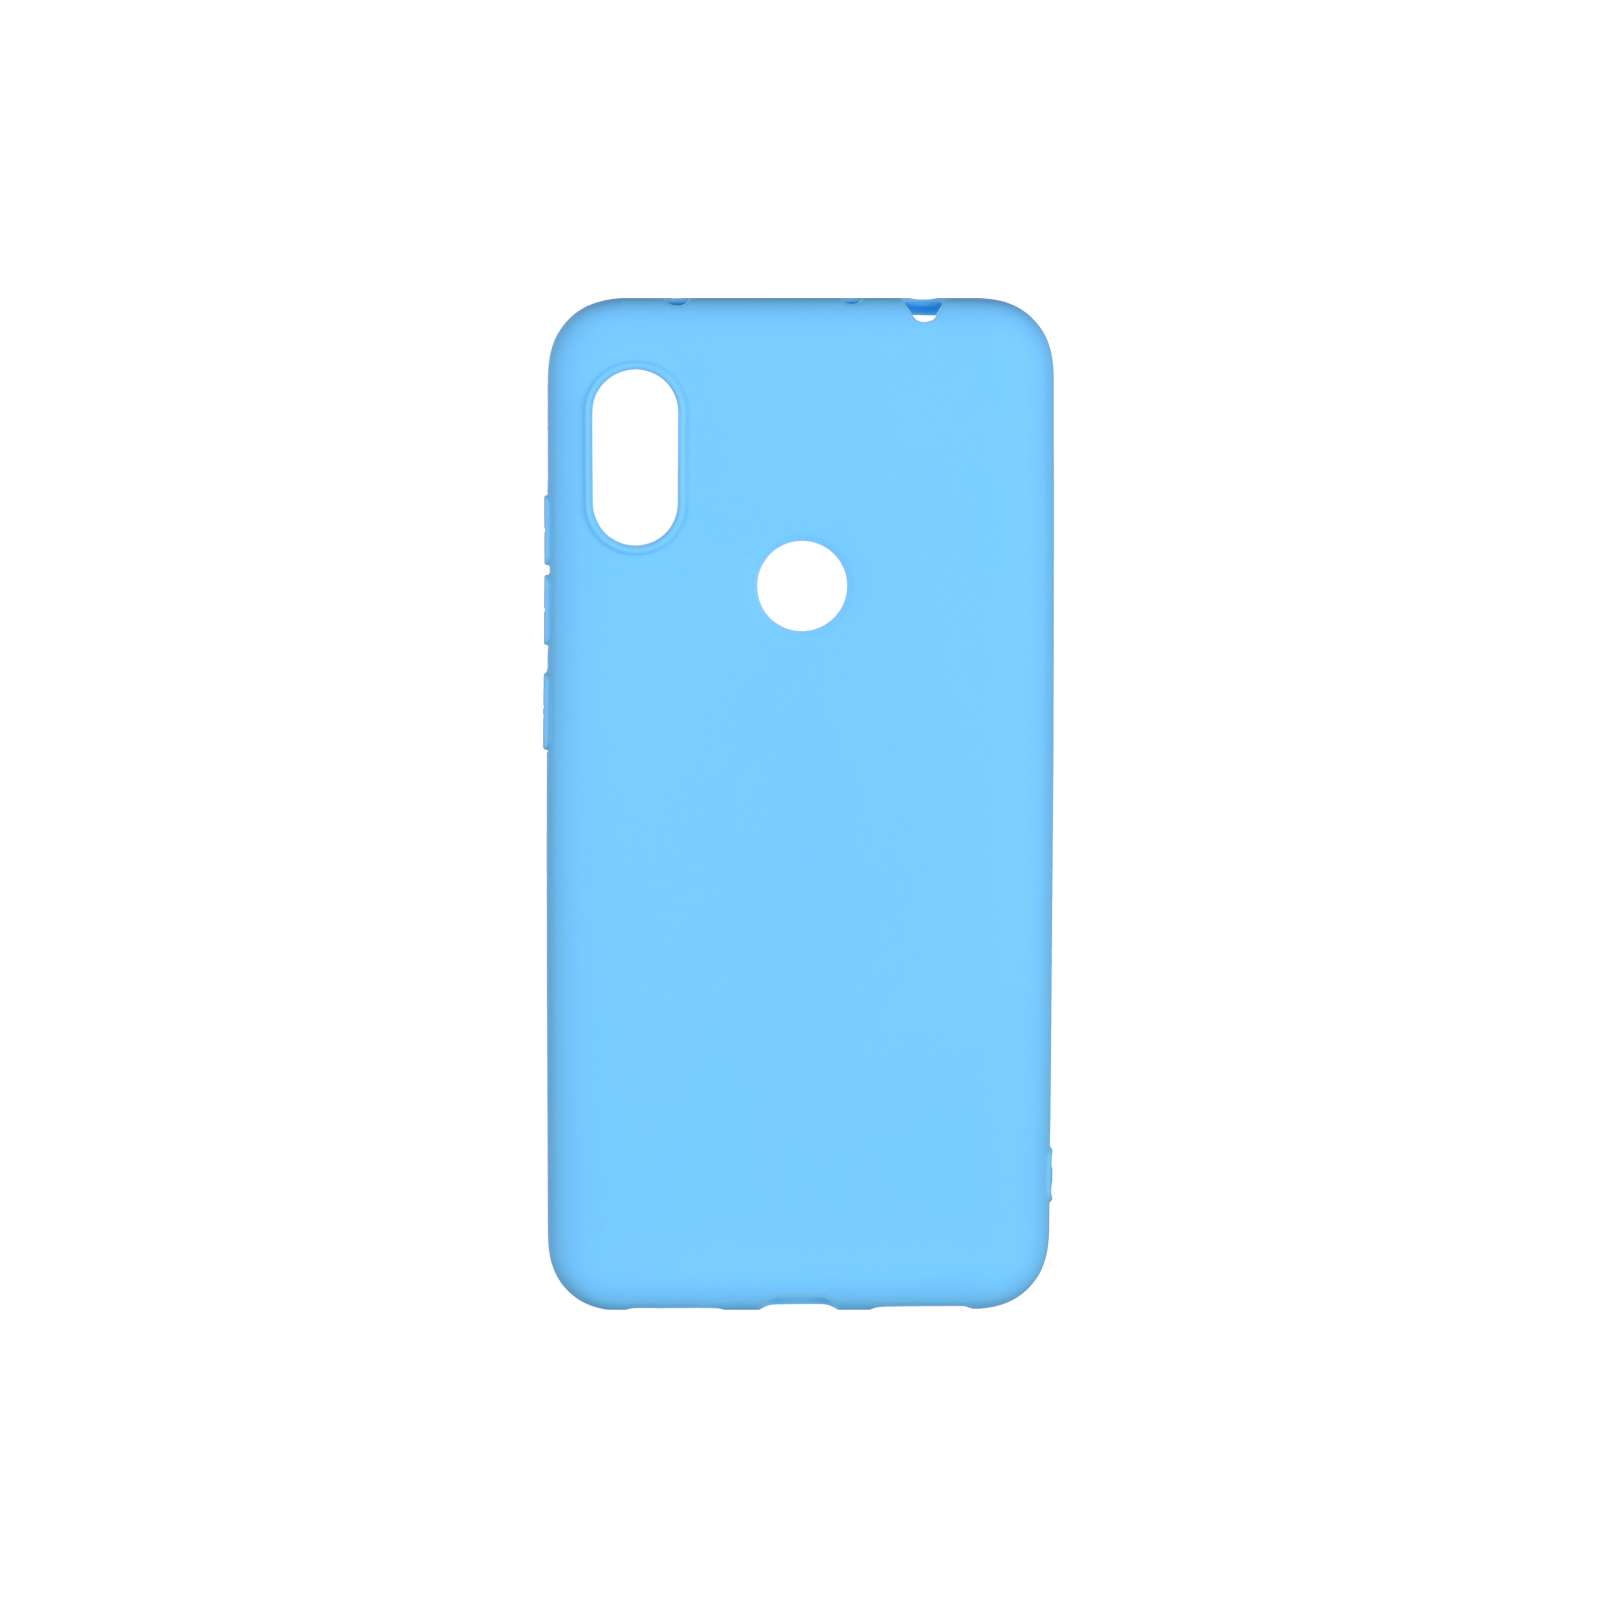 Чехол для мобильного телефона 2E Xiaomi Redmi Note 6 Pro, Soft touch, Blue (2E-MI-N6PR-NKST-BL)